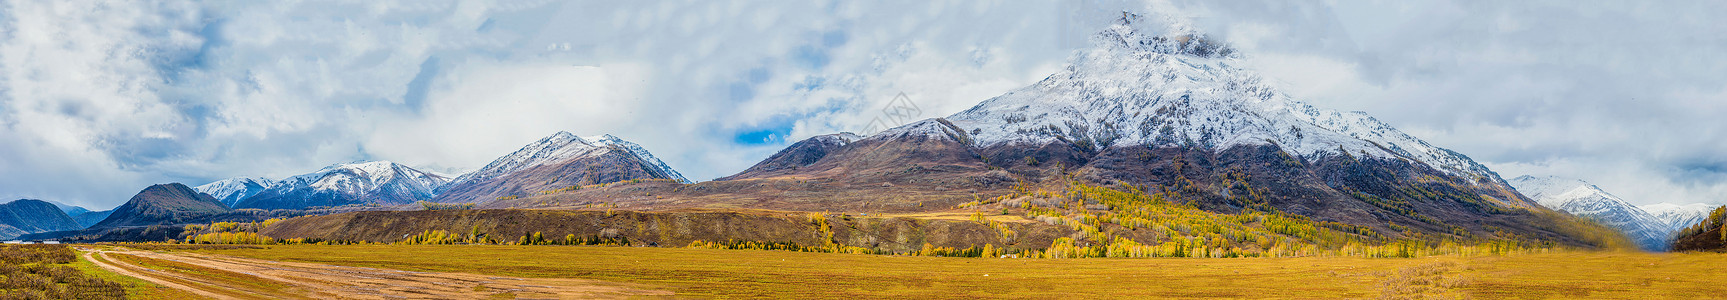 五彩斑斓的草原秋色北疆秋色雪山全景背景